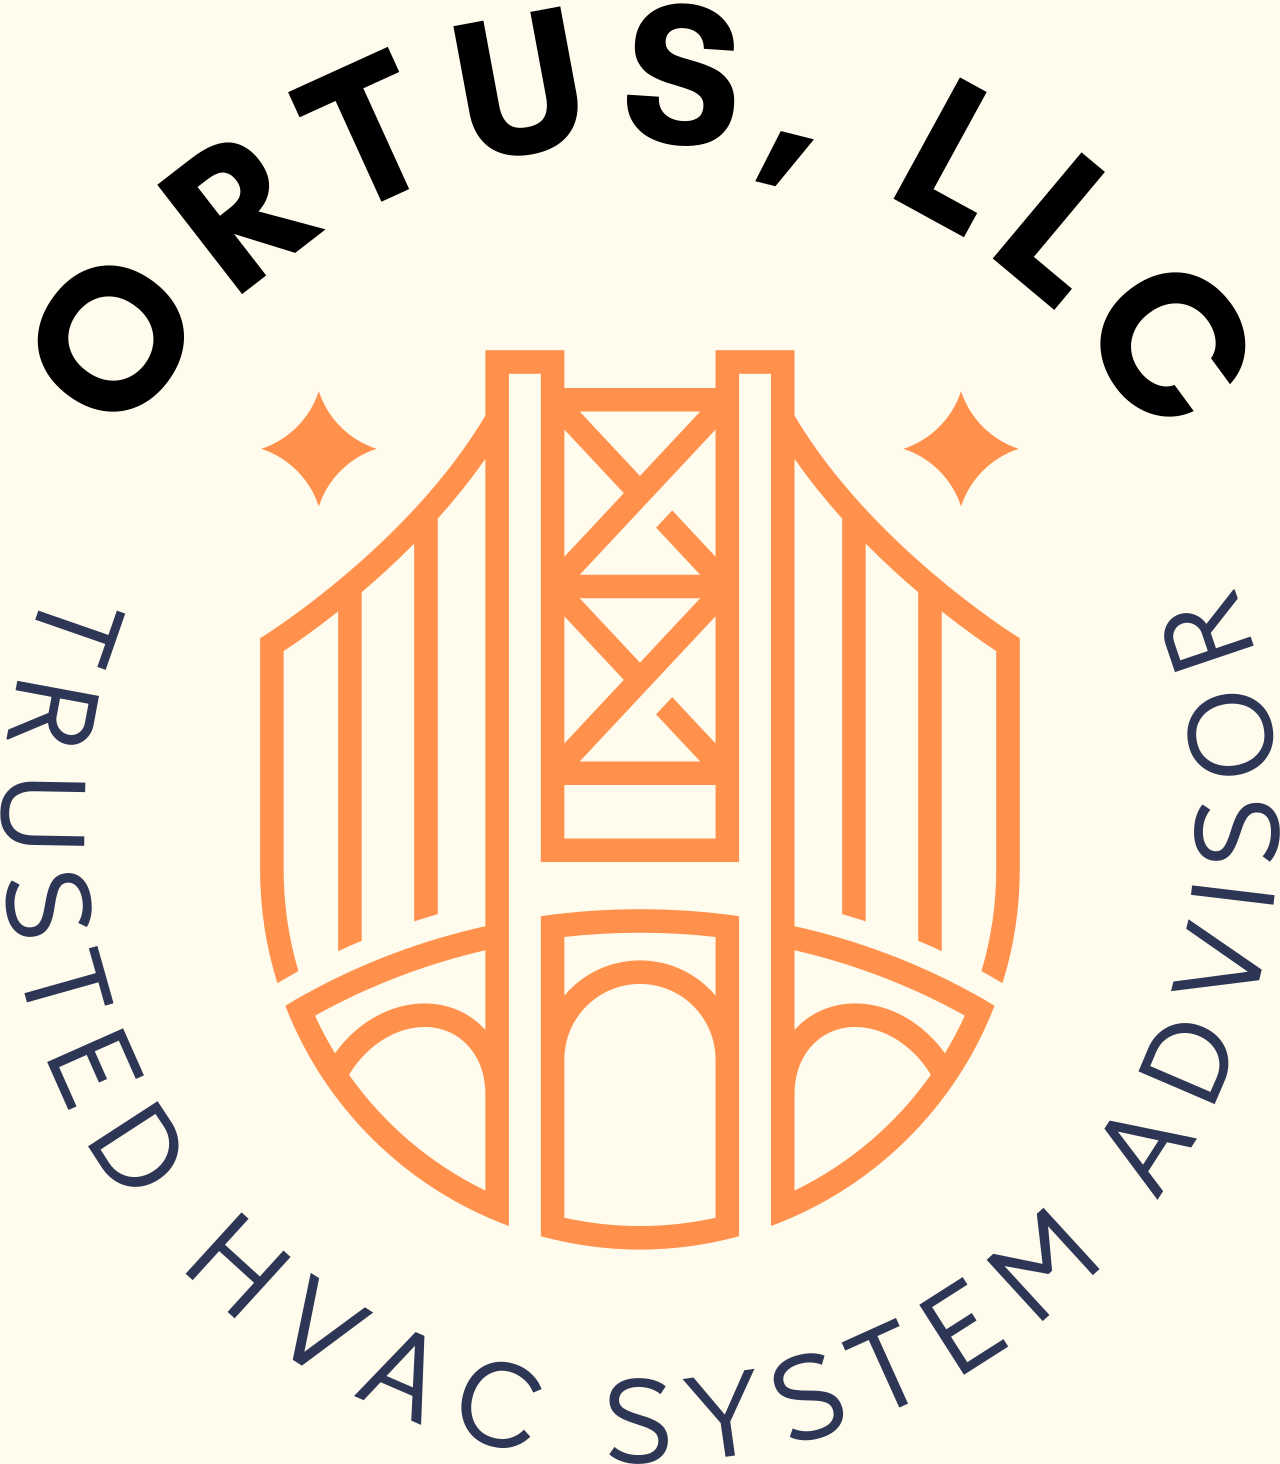 ORTUS, LLC's logo